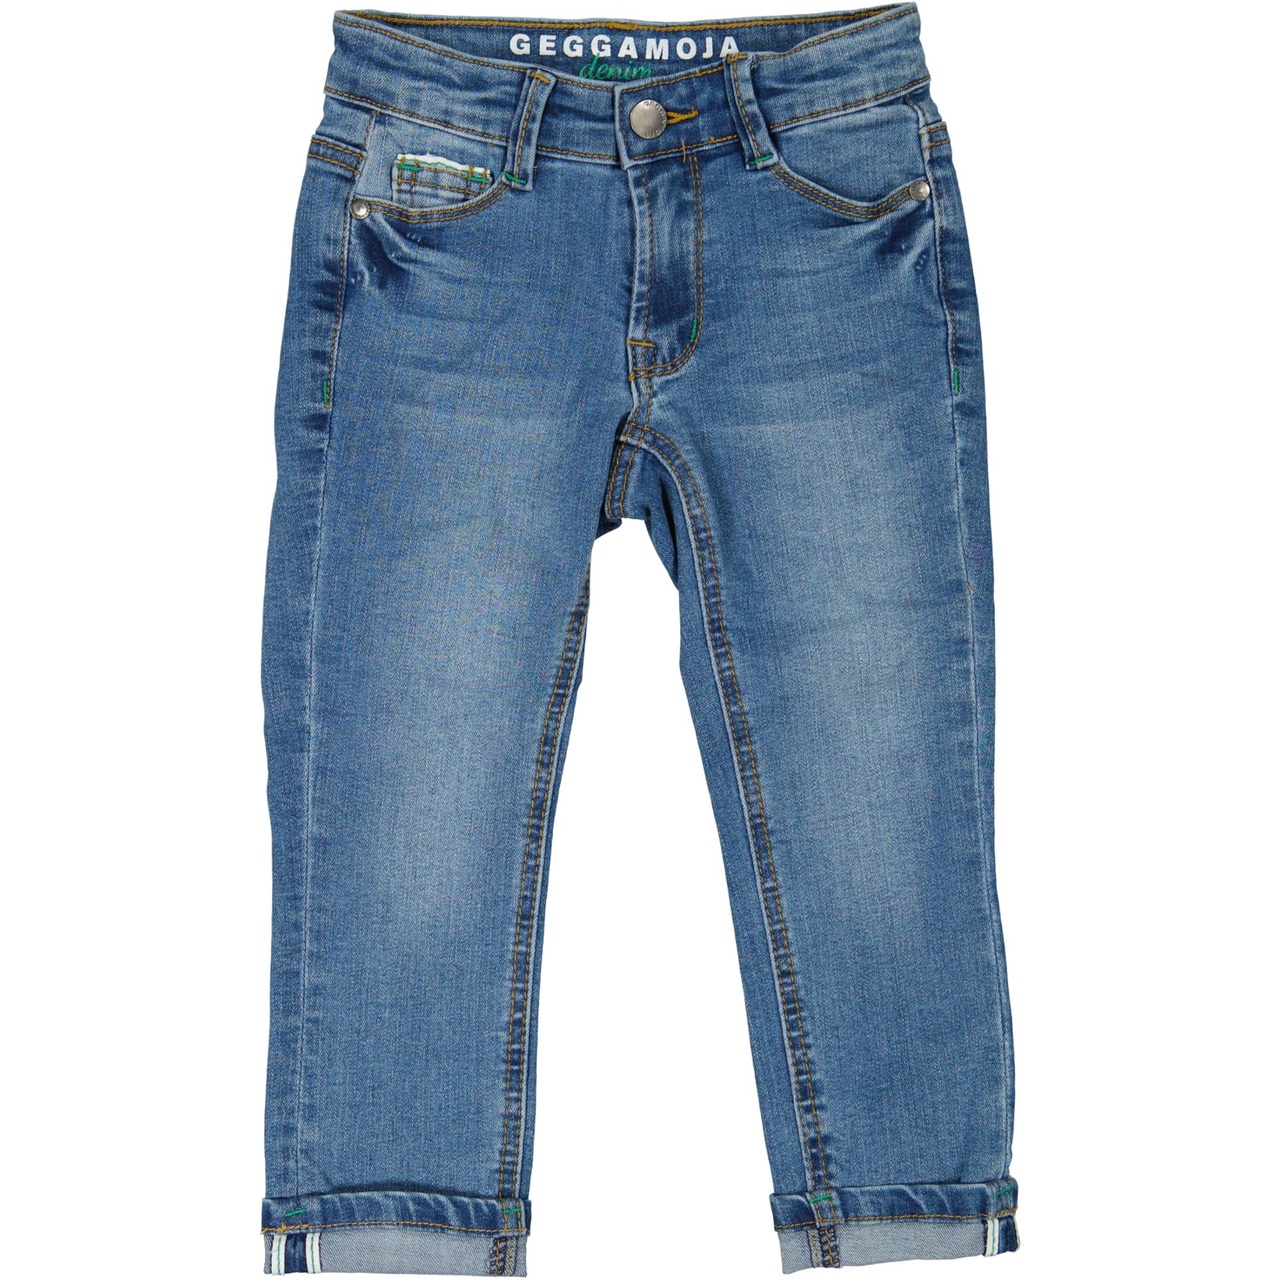 Unisex 5-pocket jeans Denim blue wash 98/104